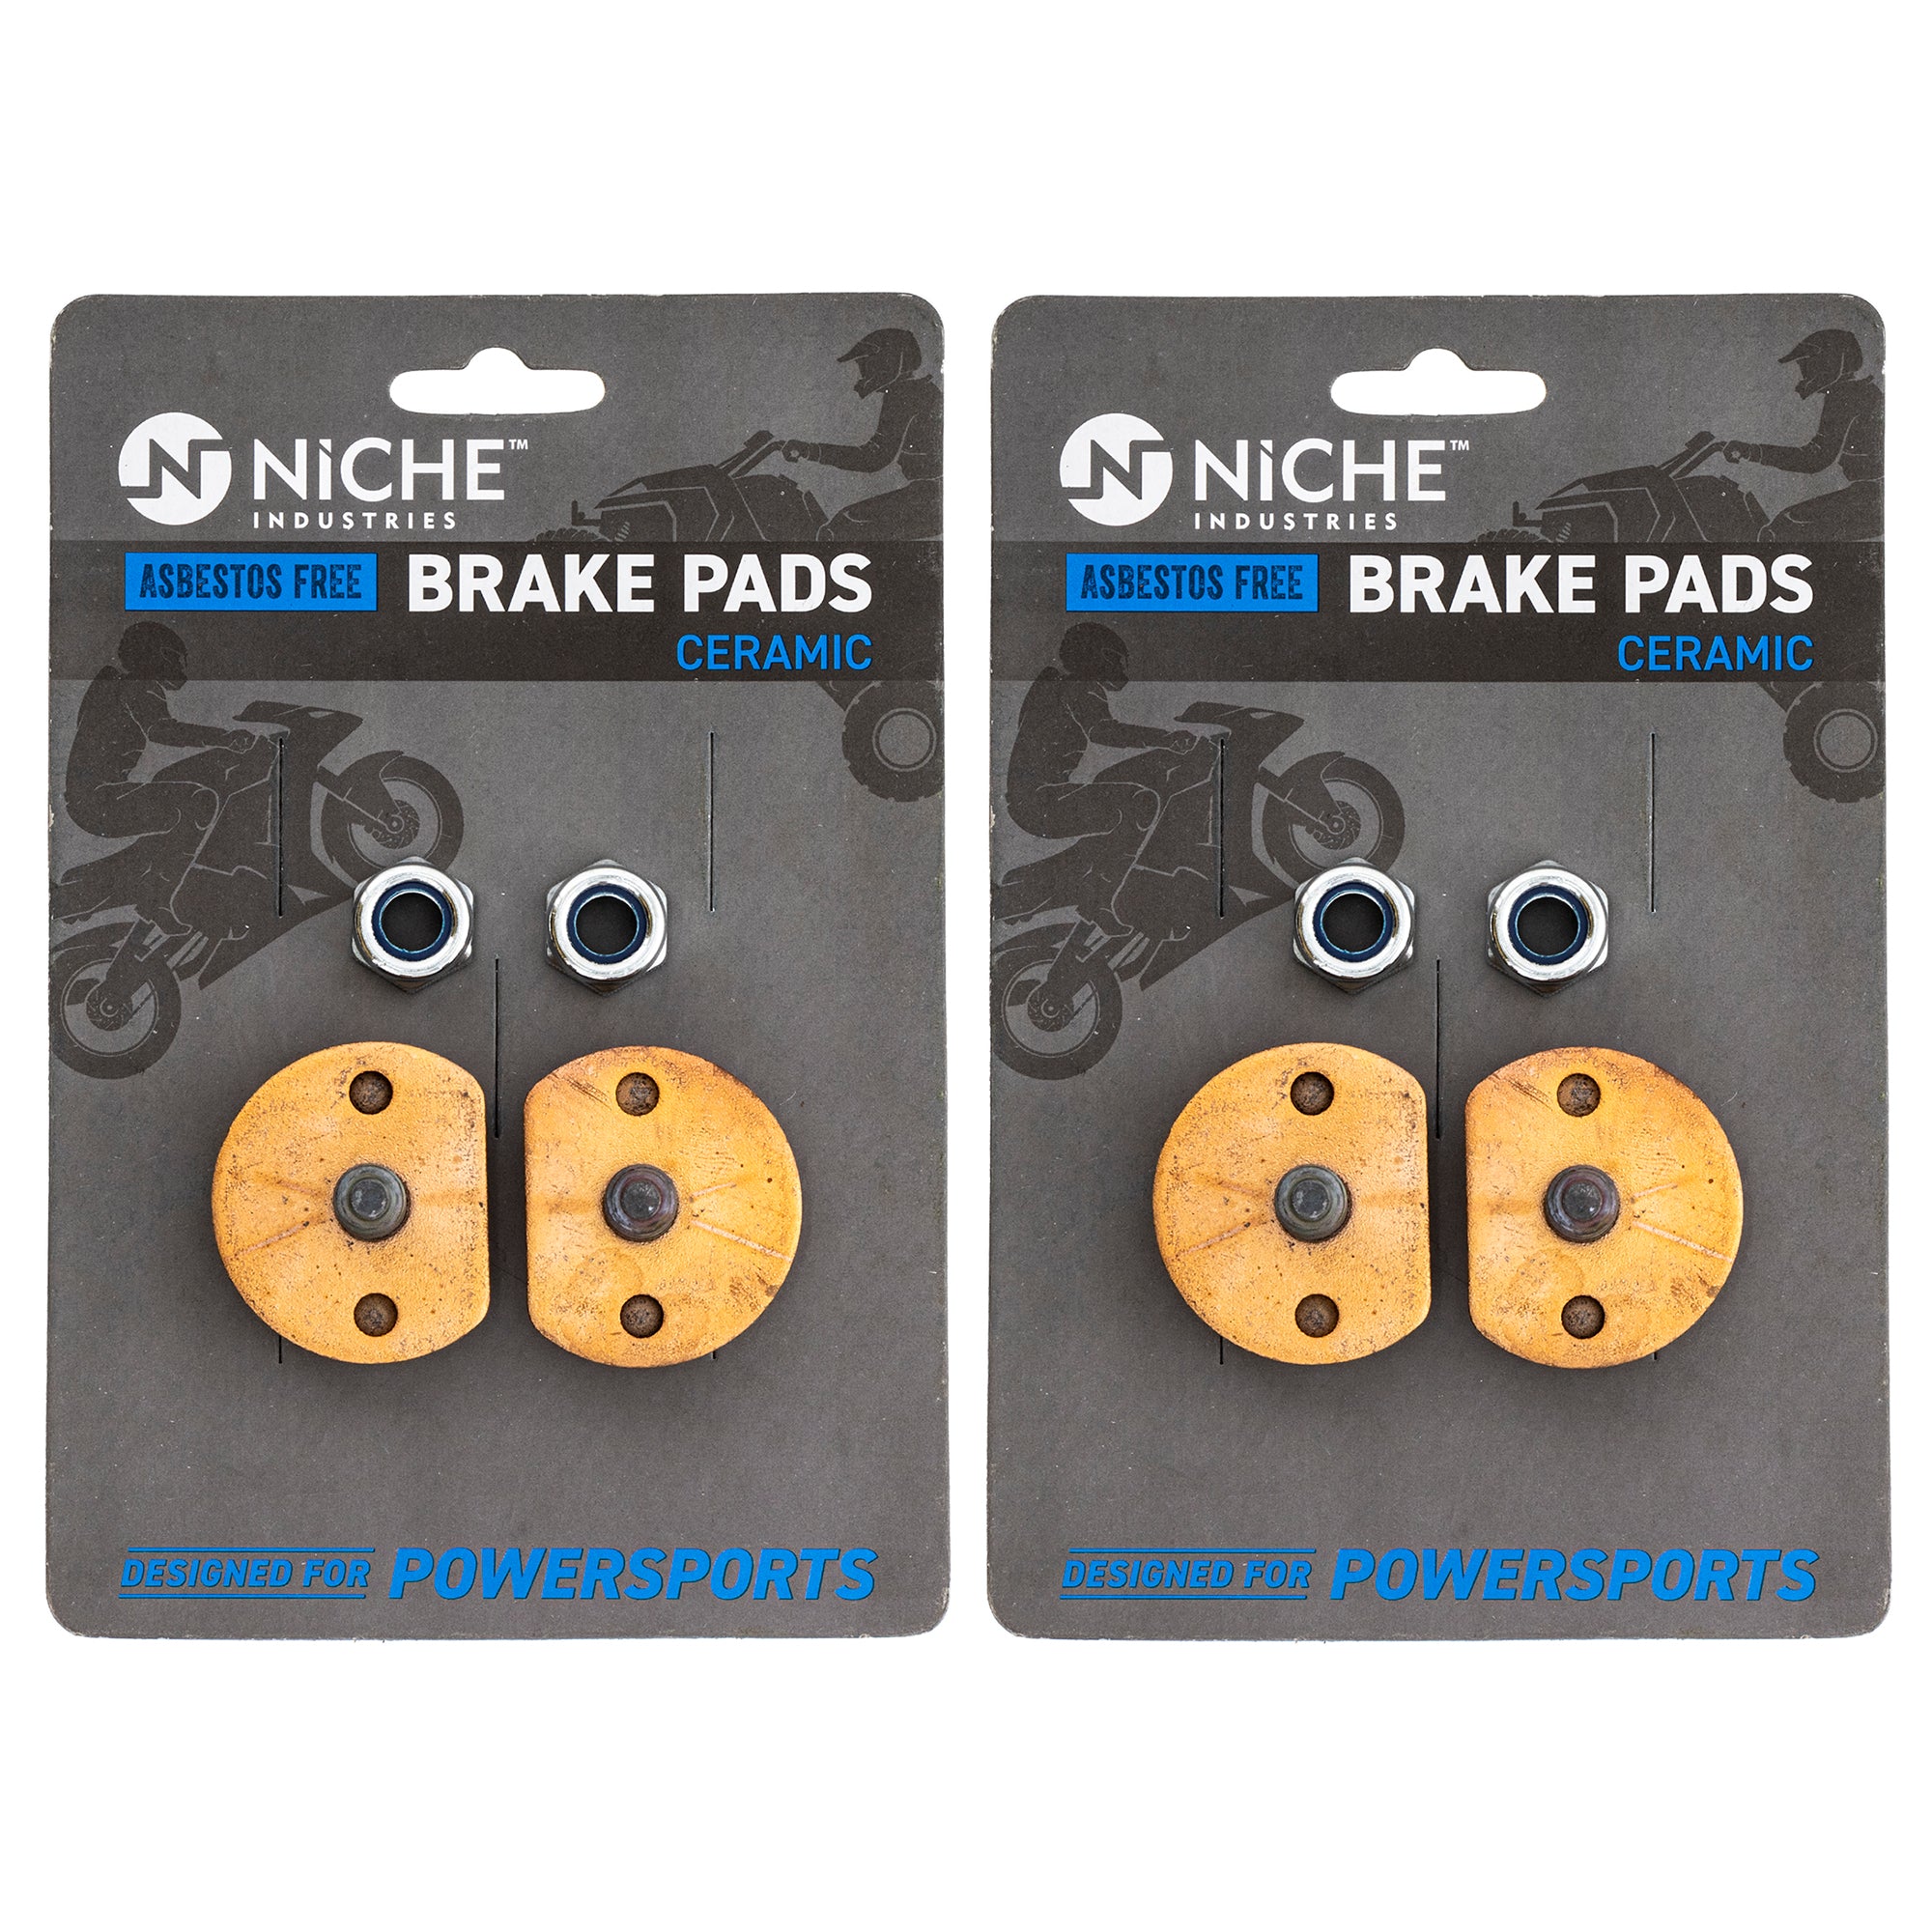 Rear Ceramic Brake Pad Set 2-Pack for BRP Can-Am Ski-Doo Sea-Doo Tundra Summit Skandic NICHE 519-KPA2694D